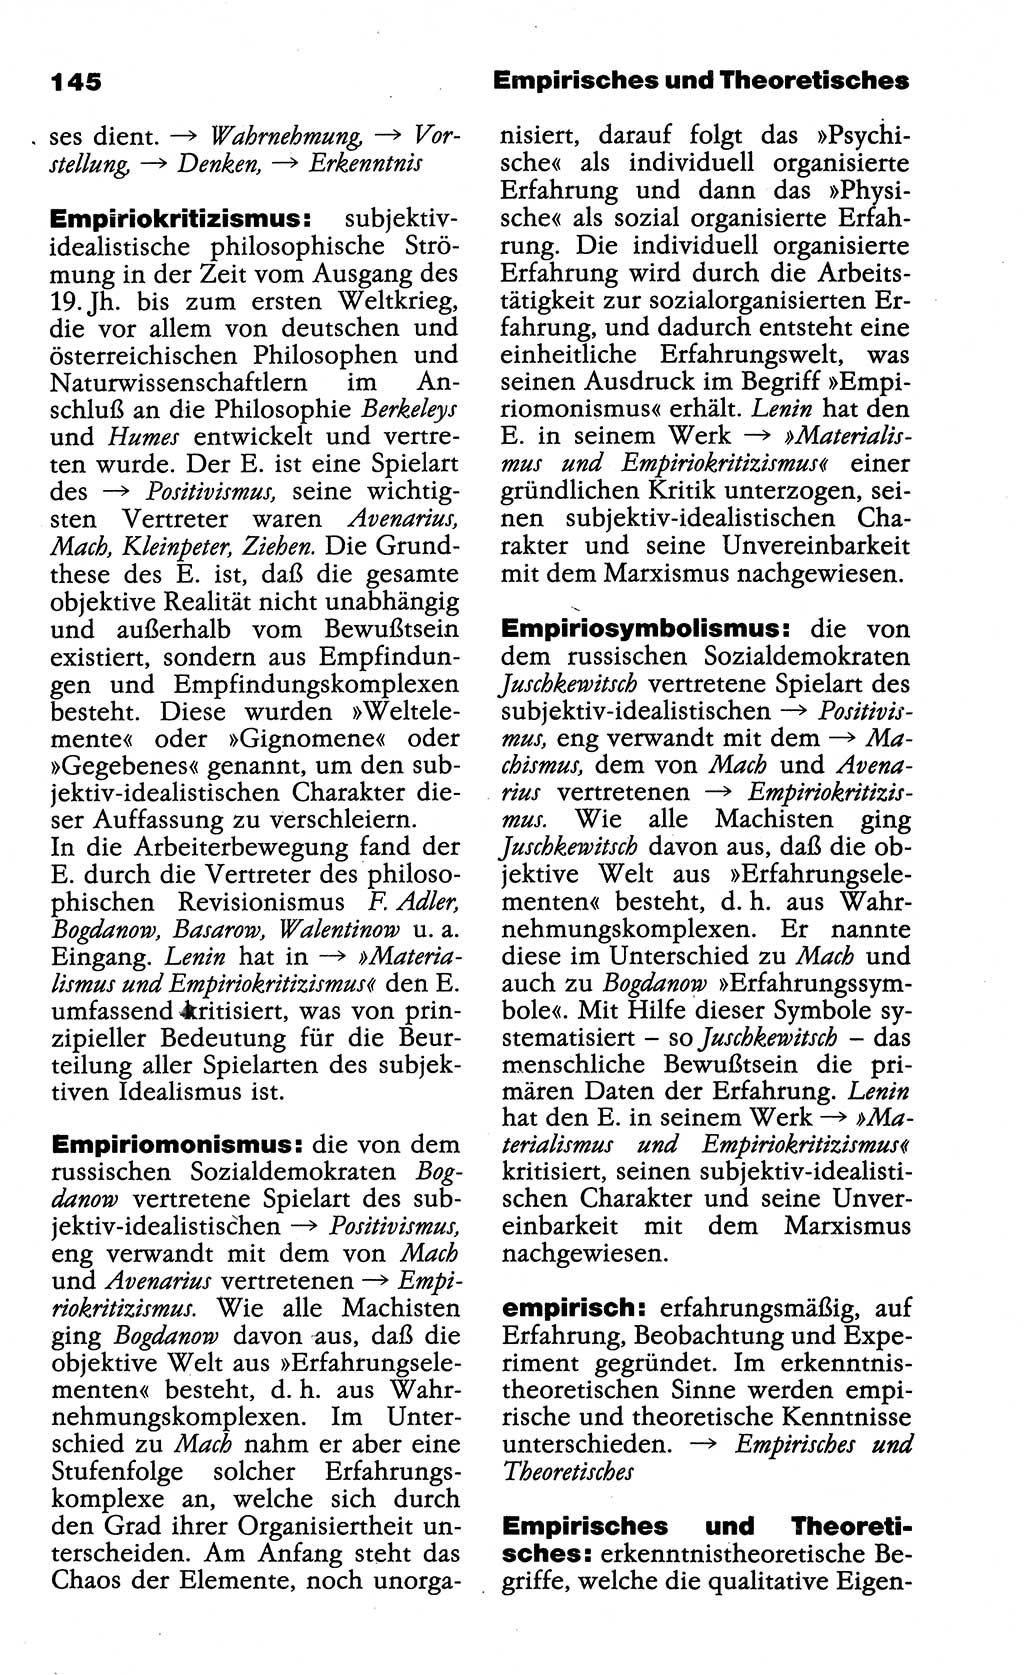 Wörterbuch der marxistisch-leninistischen Philosophie [Deutsche Demokratische Republik (DDR)] 1985, Seite 145 (Wb. ML Phil. DDR 1985, S. 145)